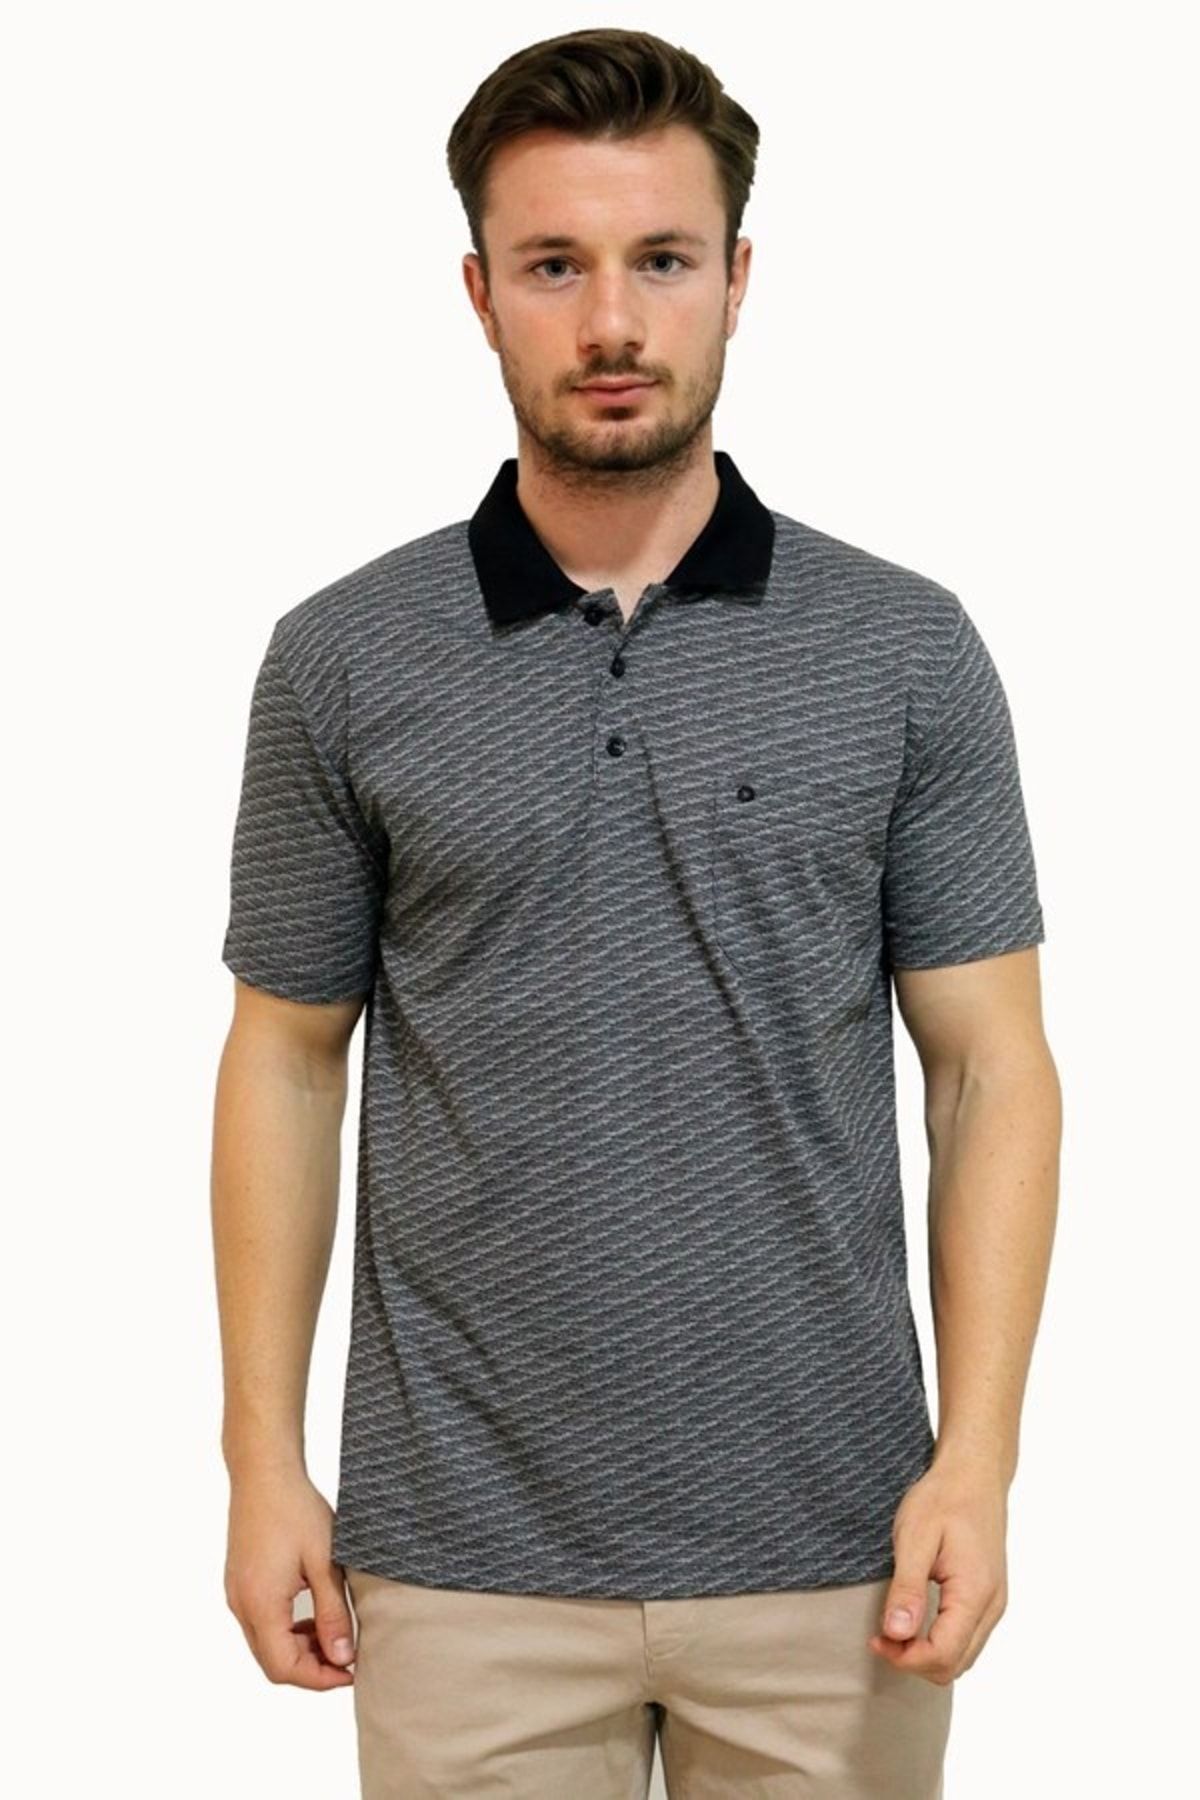 Diandor Erkek T-shirt Siyah-gri/black-grey 2217014